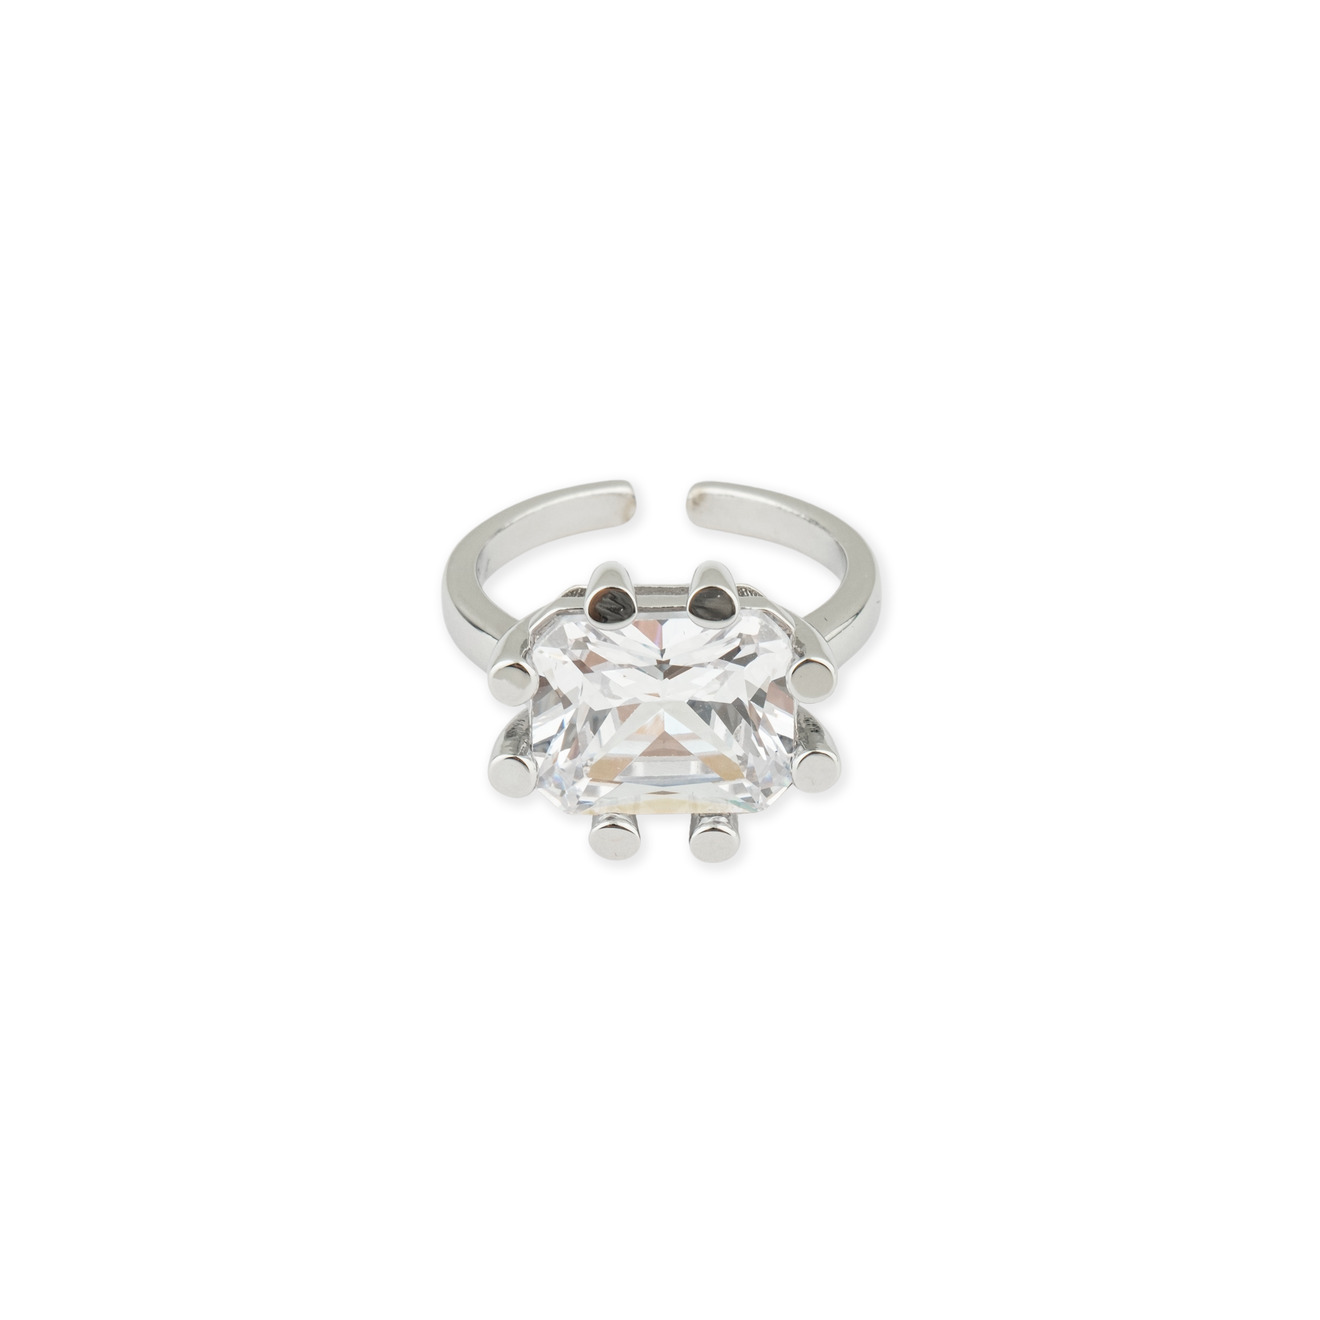 Herald Percy Серебристое кольцо с кристаллом